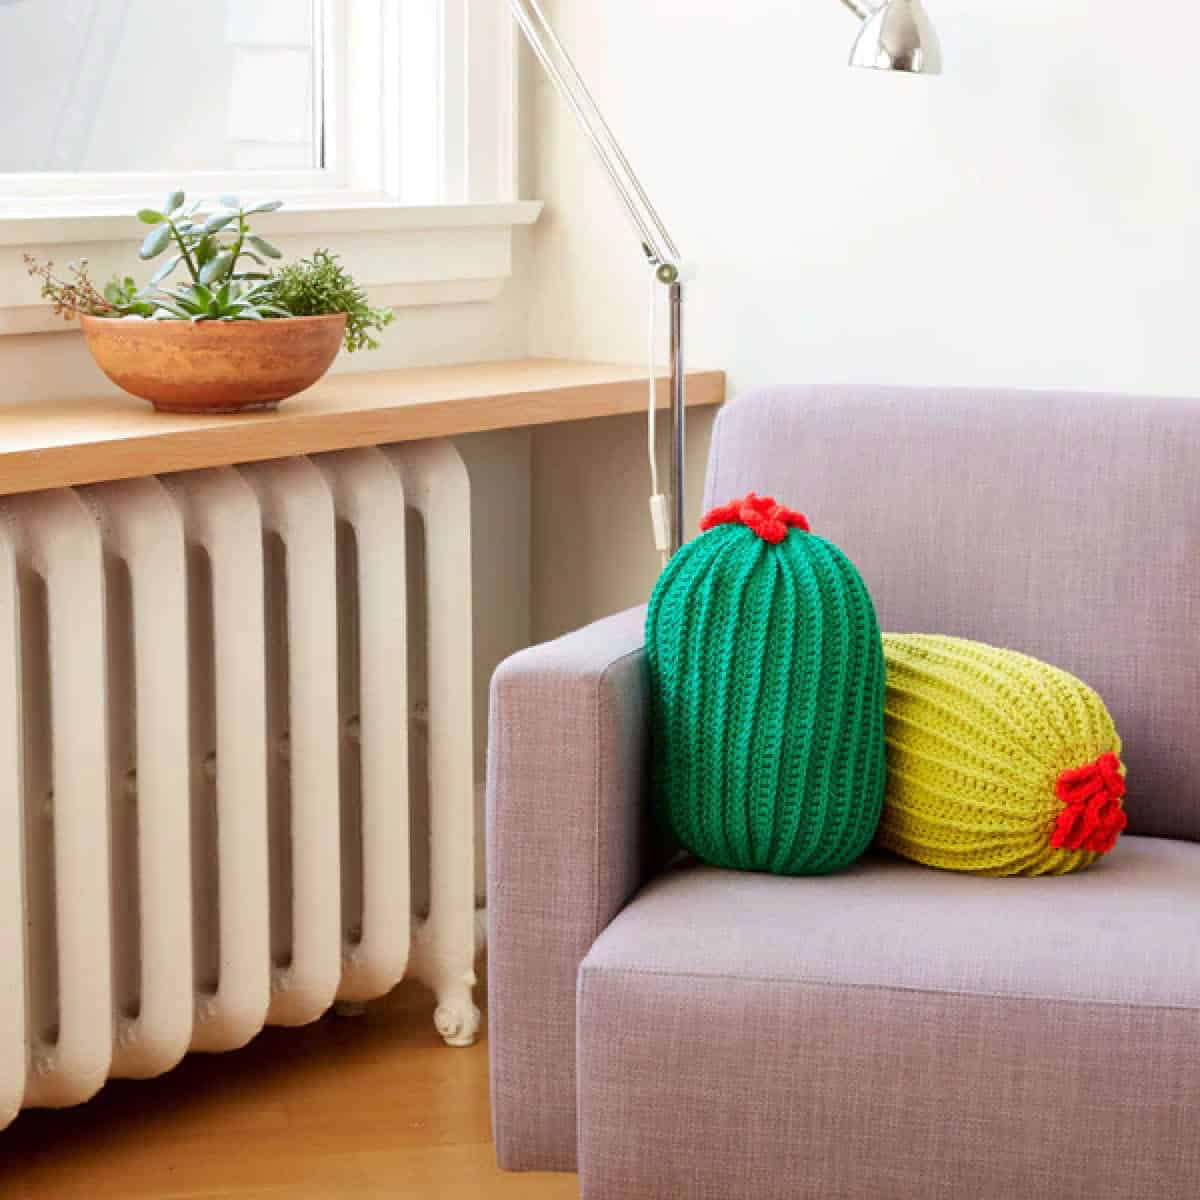 Crochet Novelty Cactus Pillow Pattern